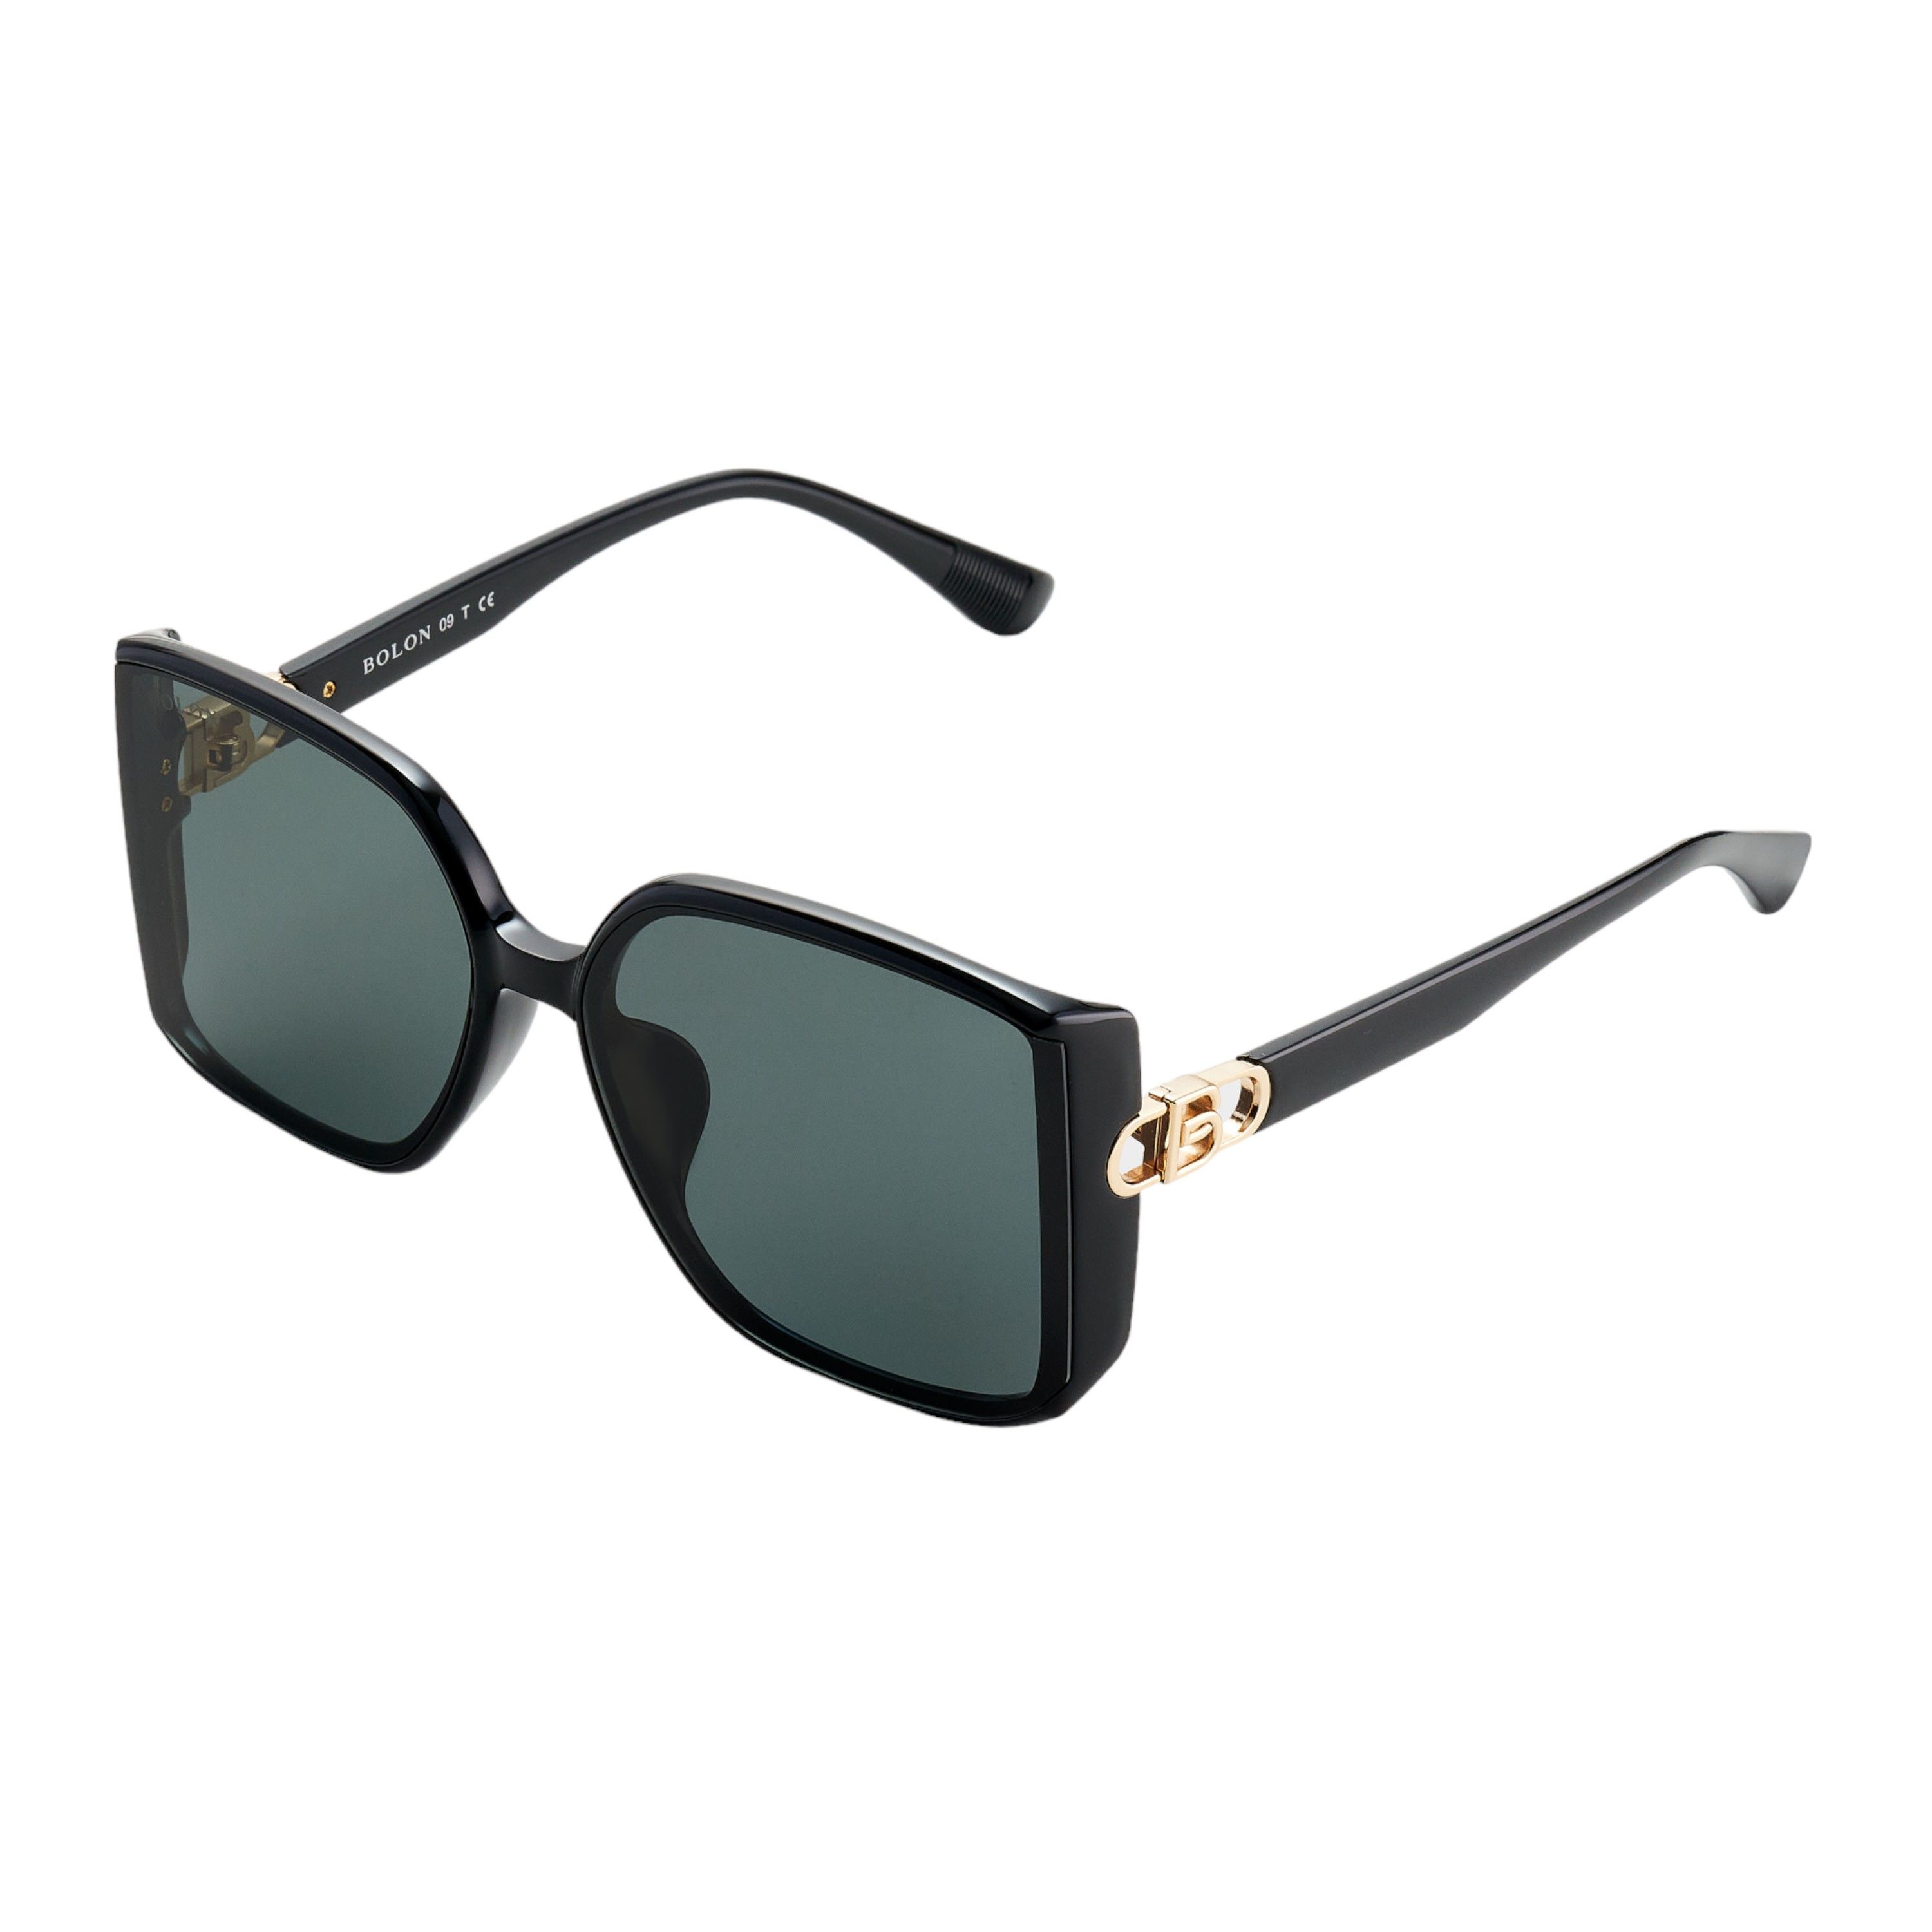 BL5083 Square Sunglasses C10 - size 59